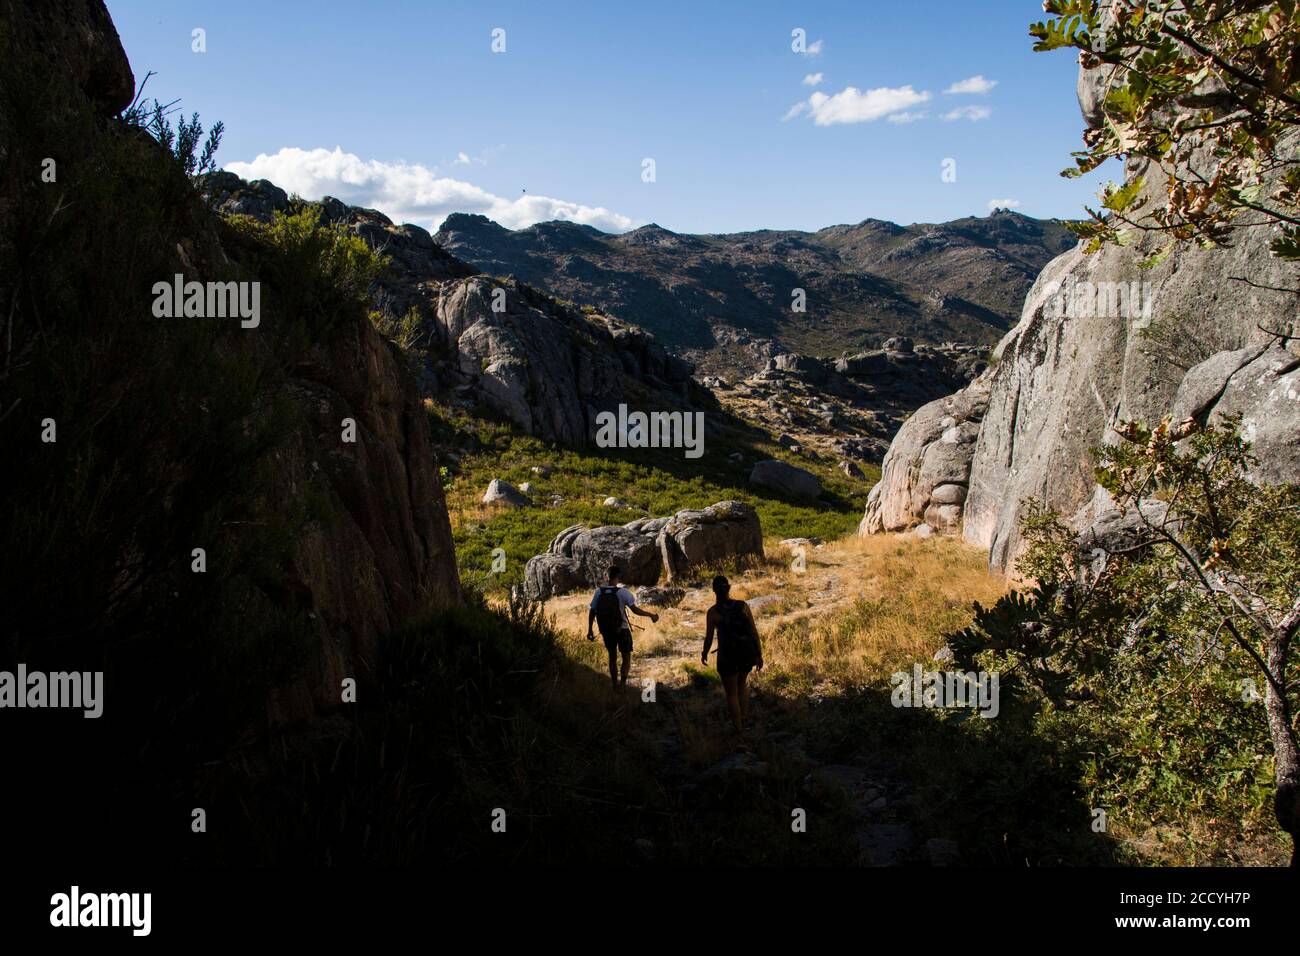 Randonneurs en contre-jour descendant dans un paysage de montagne sur une journée ensoleillée Banque D'Images